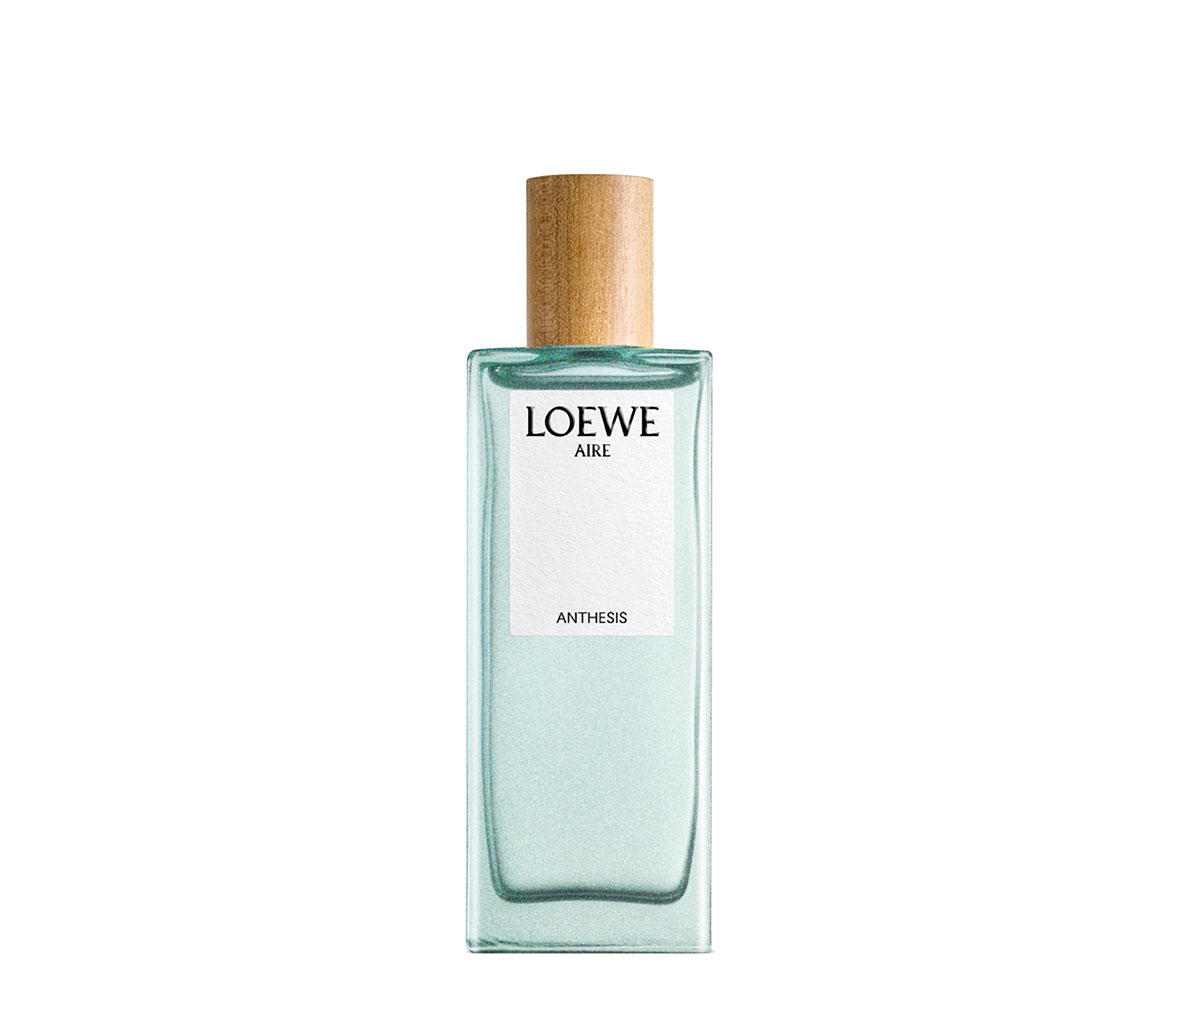 Frasco de perfume azul verdoso con etiqueta blanca